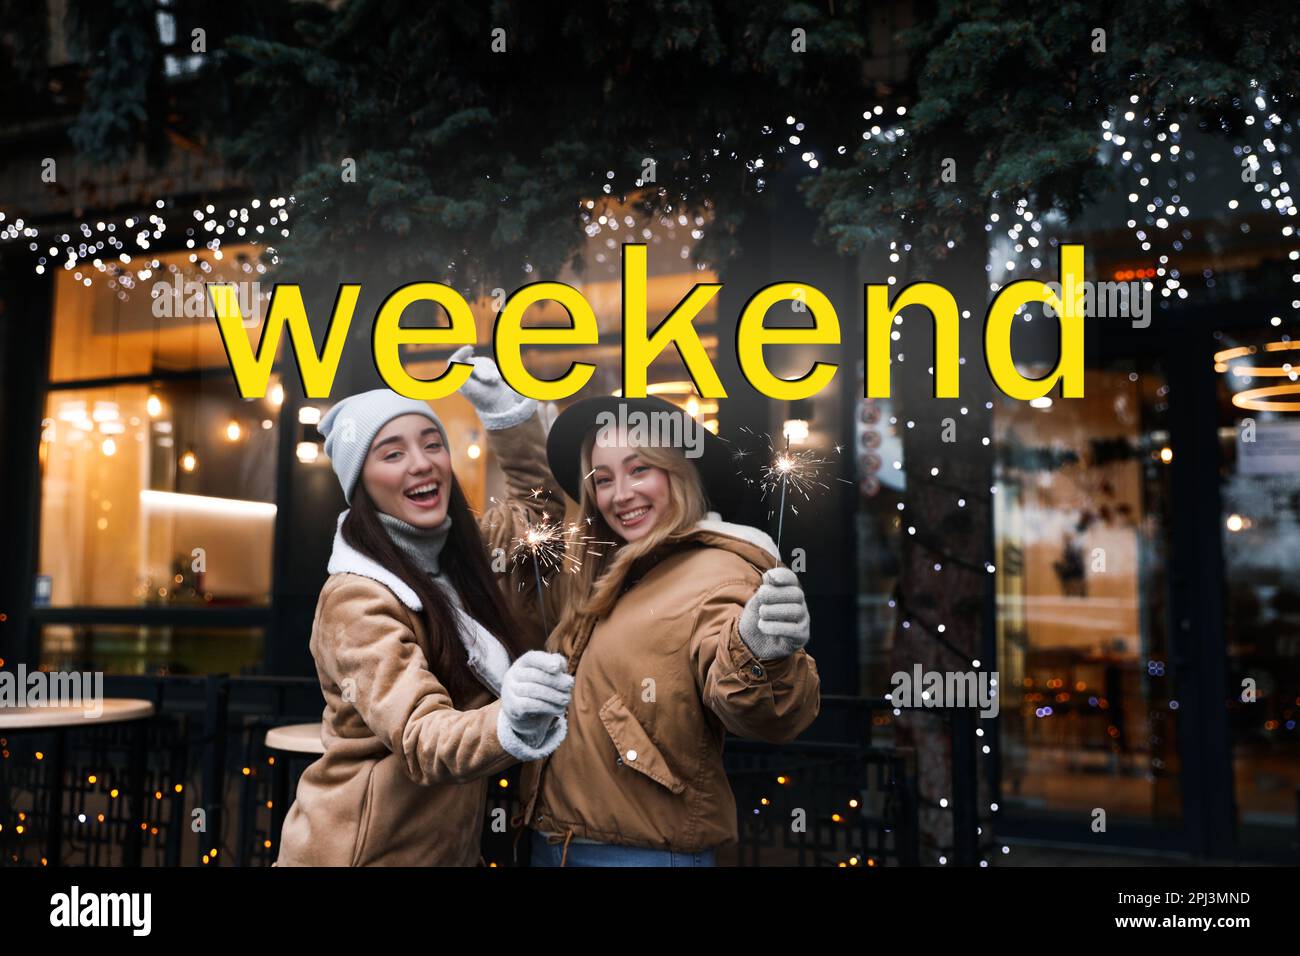 Ciao Weekend. Giovani donne felici con gli scintillatori alla fiera invernale Foto Stock